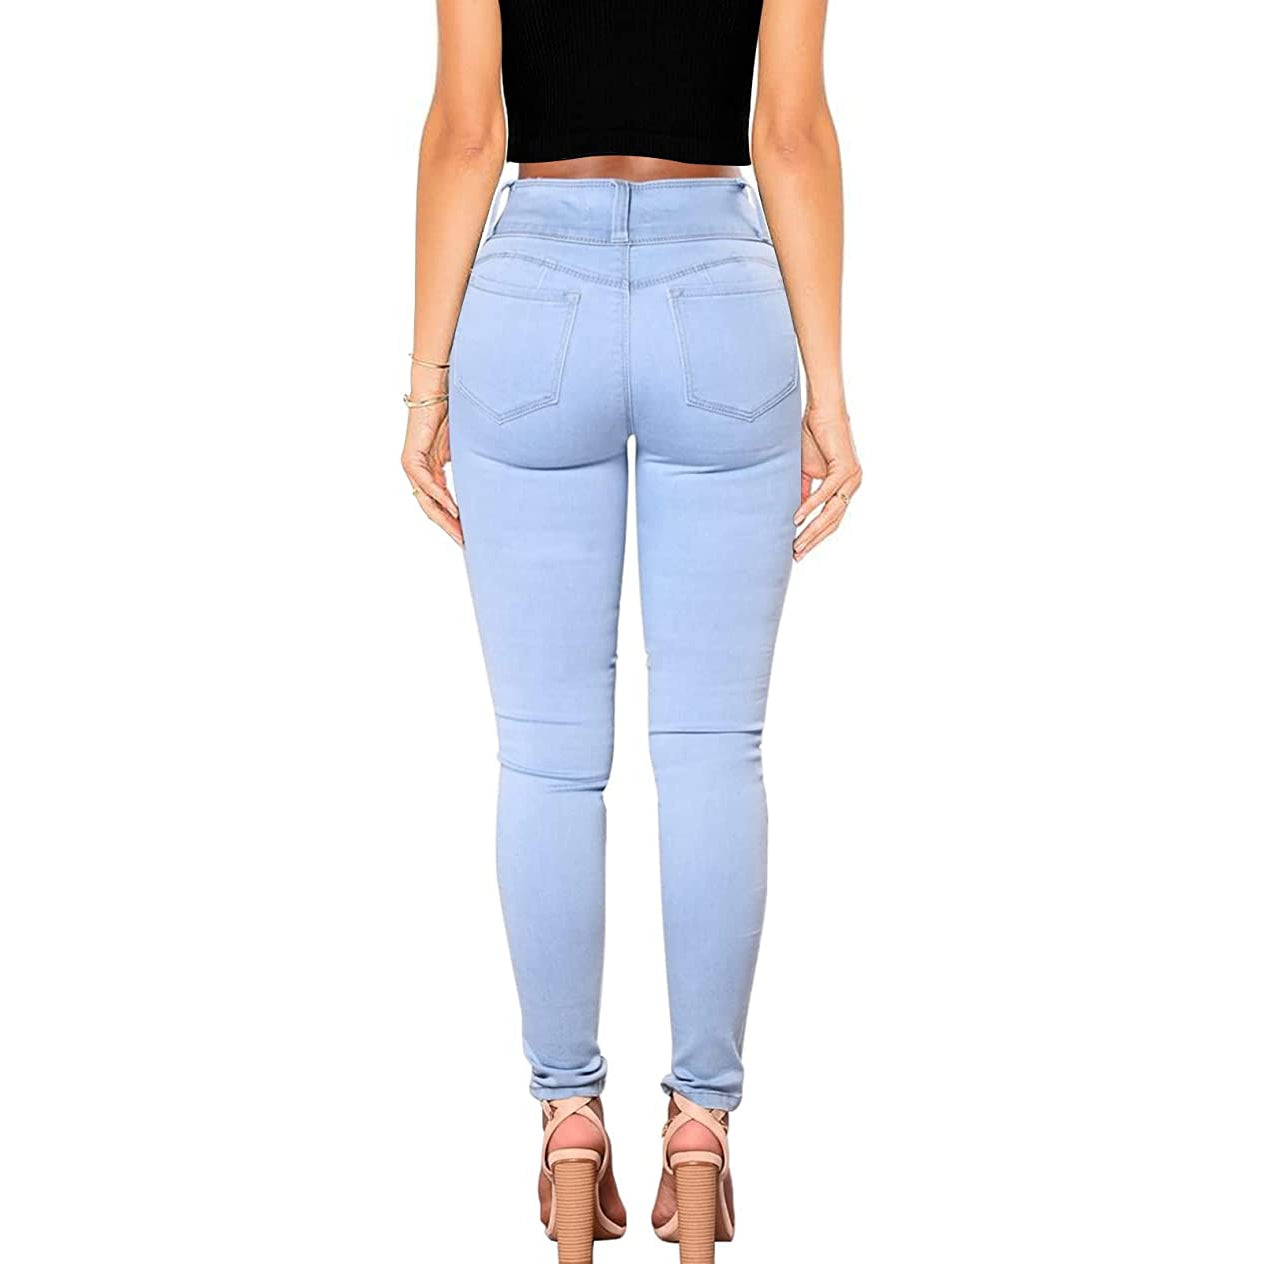 Buy Women's Skinny Shape Enhancer Jeans Online